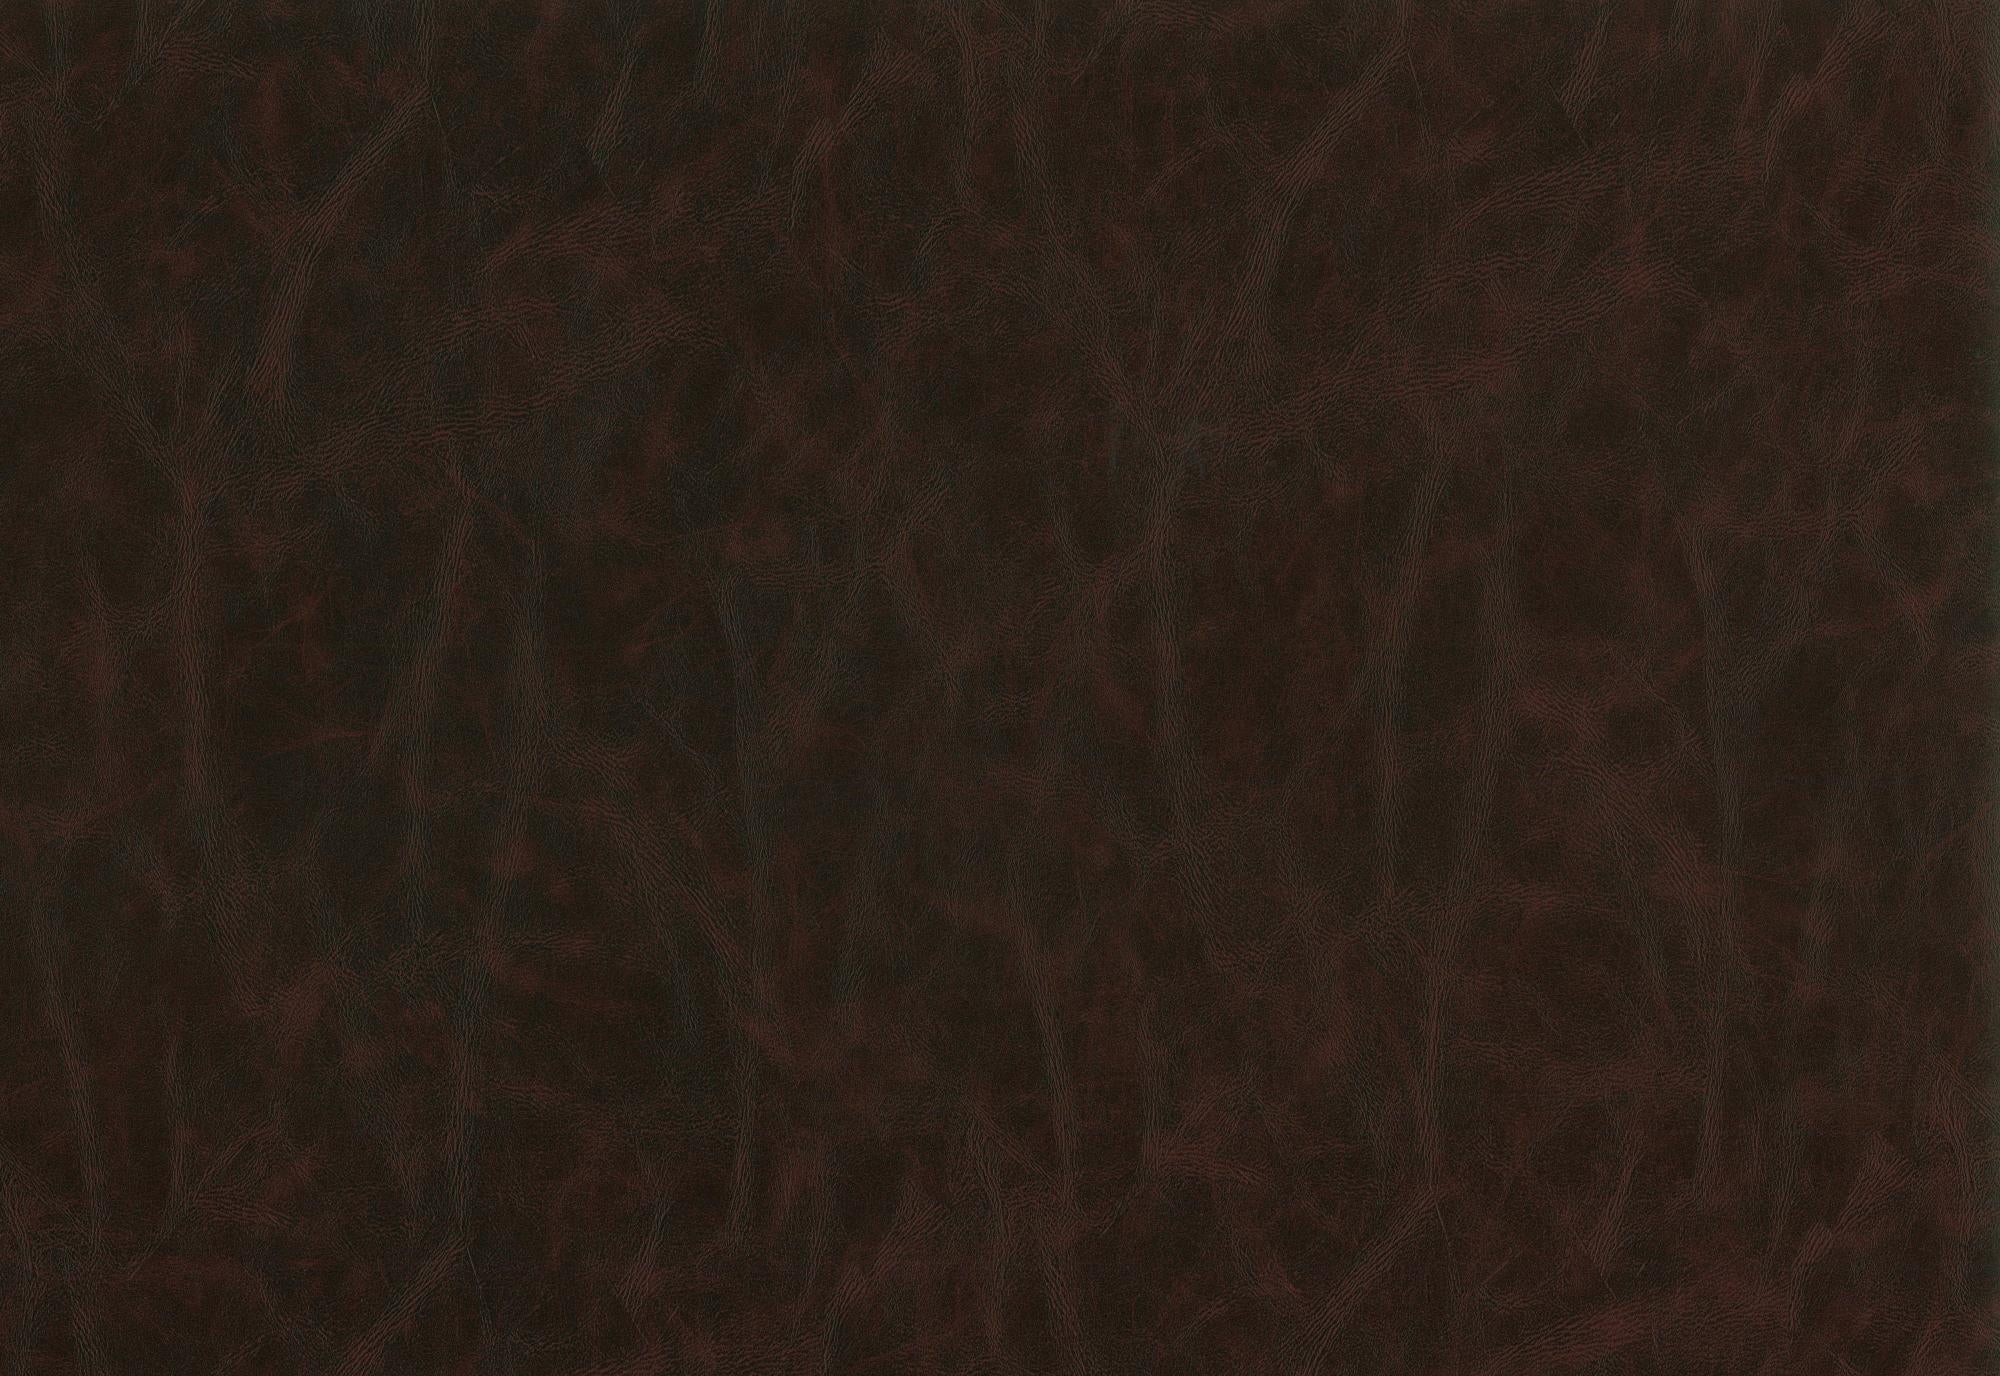 Tela al corte tapicería imitación piel prima chestnut(castaña) ancho 140 cm